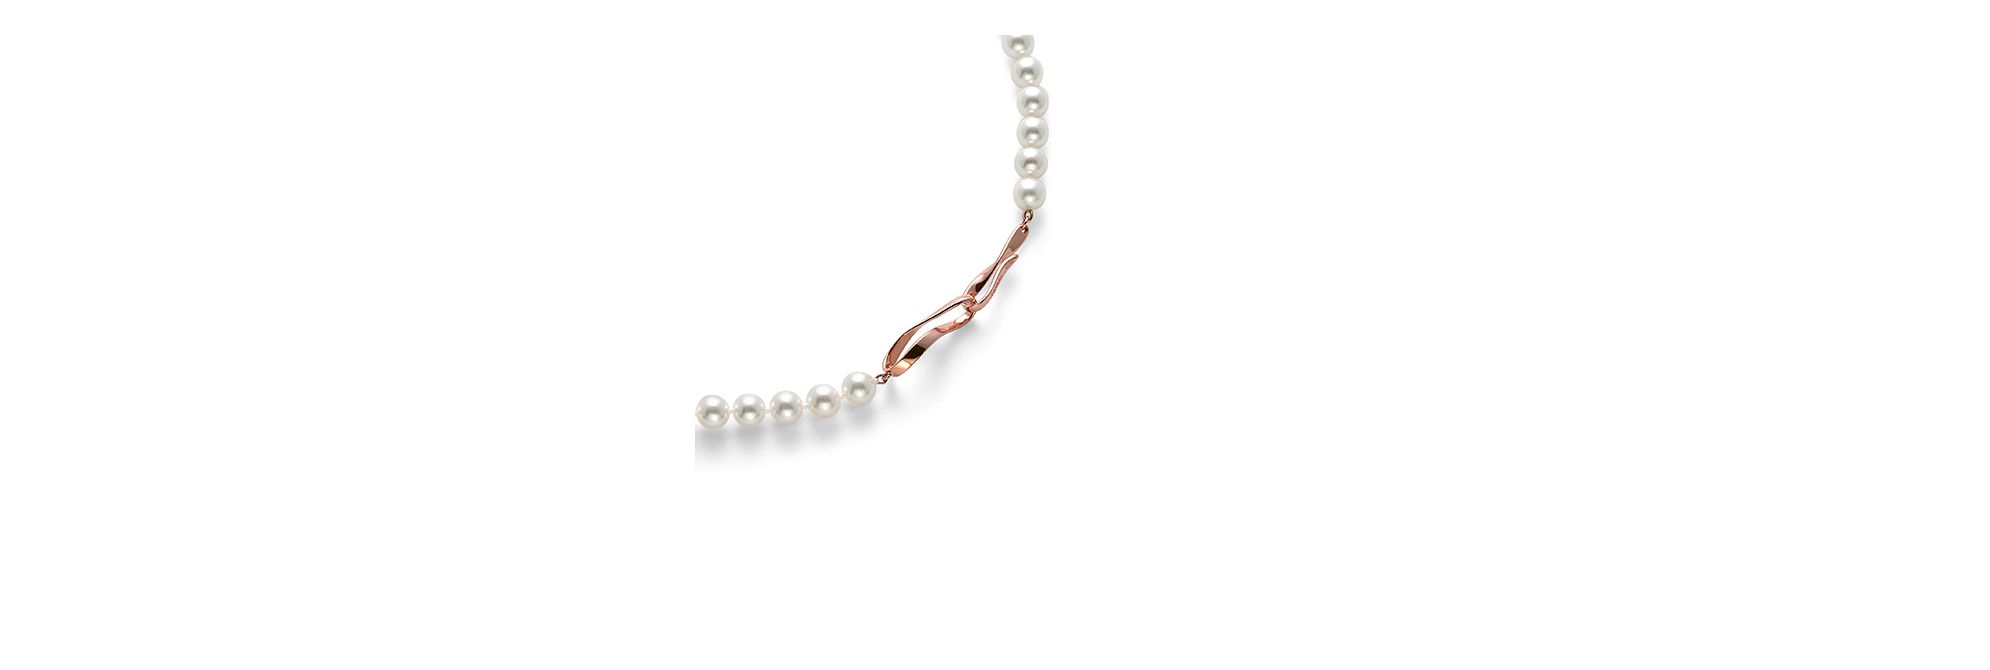 あこや真珠 ネックレス (6.5mm) UFN-N1231-18KSG|ネックレス/パール 